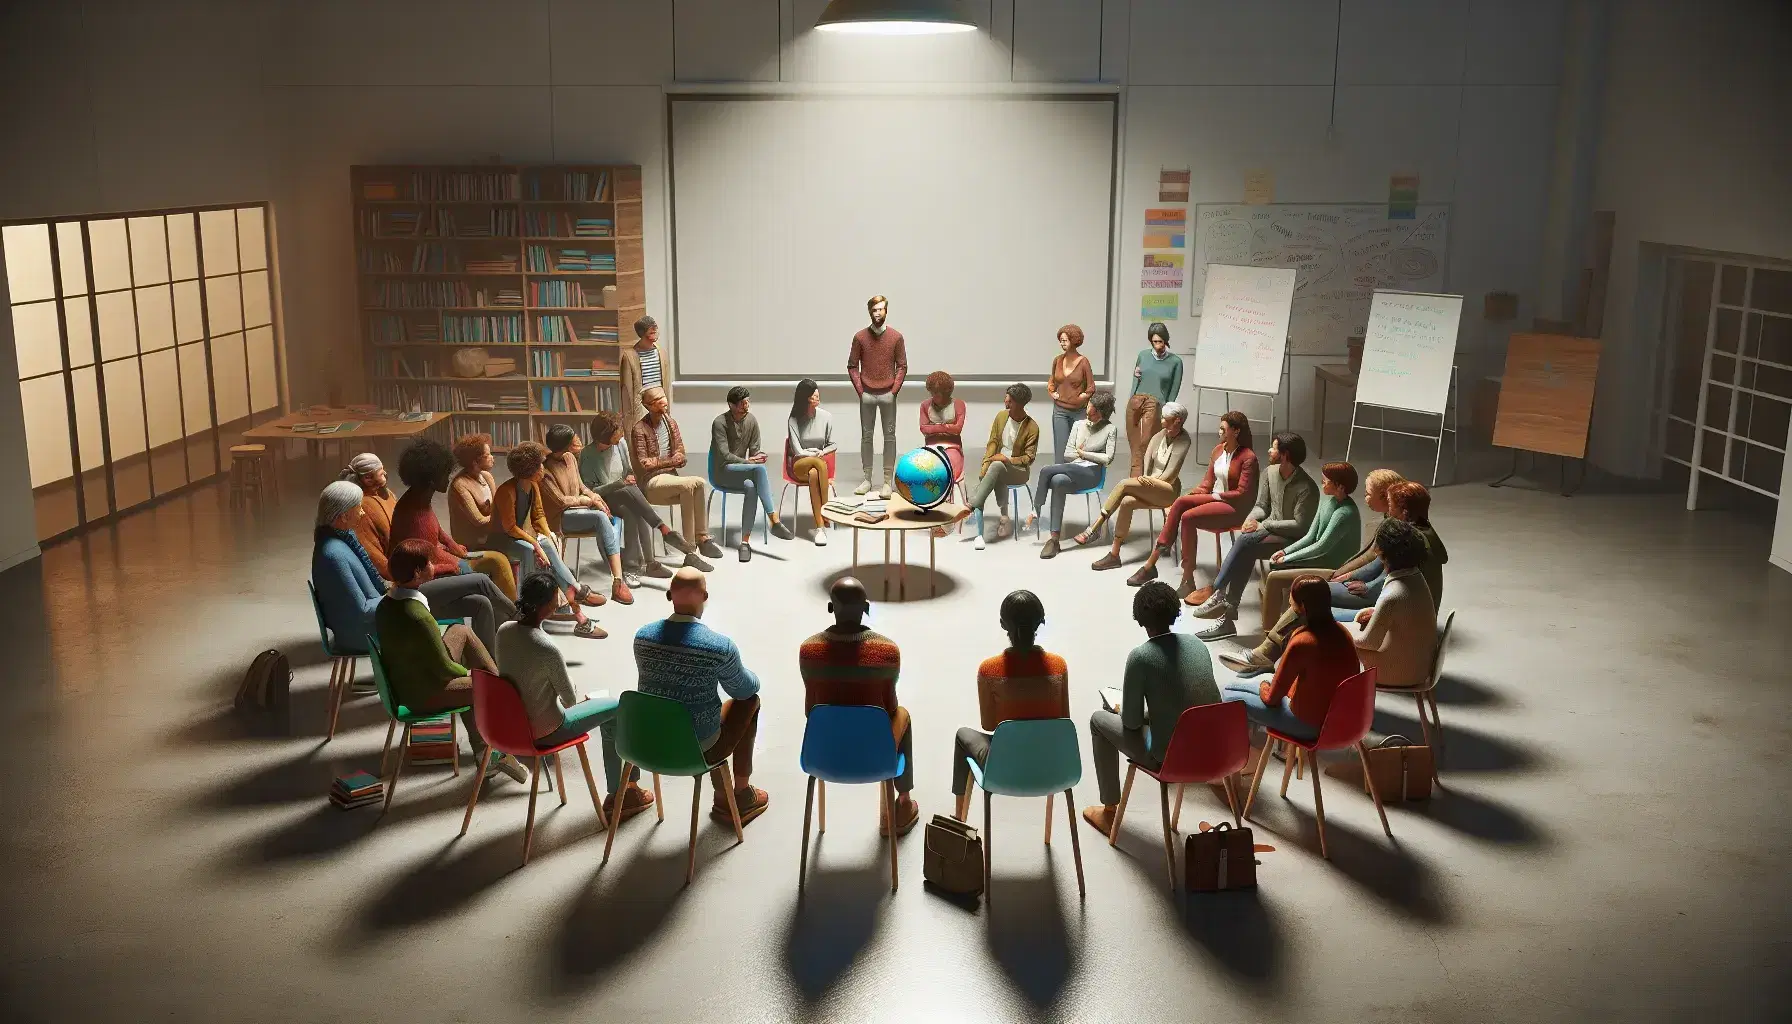 Grupo diverso de personas en semicírculo alrededor de un orador en un entorno educativo con sillas de colores, mesas con libros y un globo terráqueo.